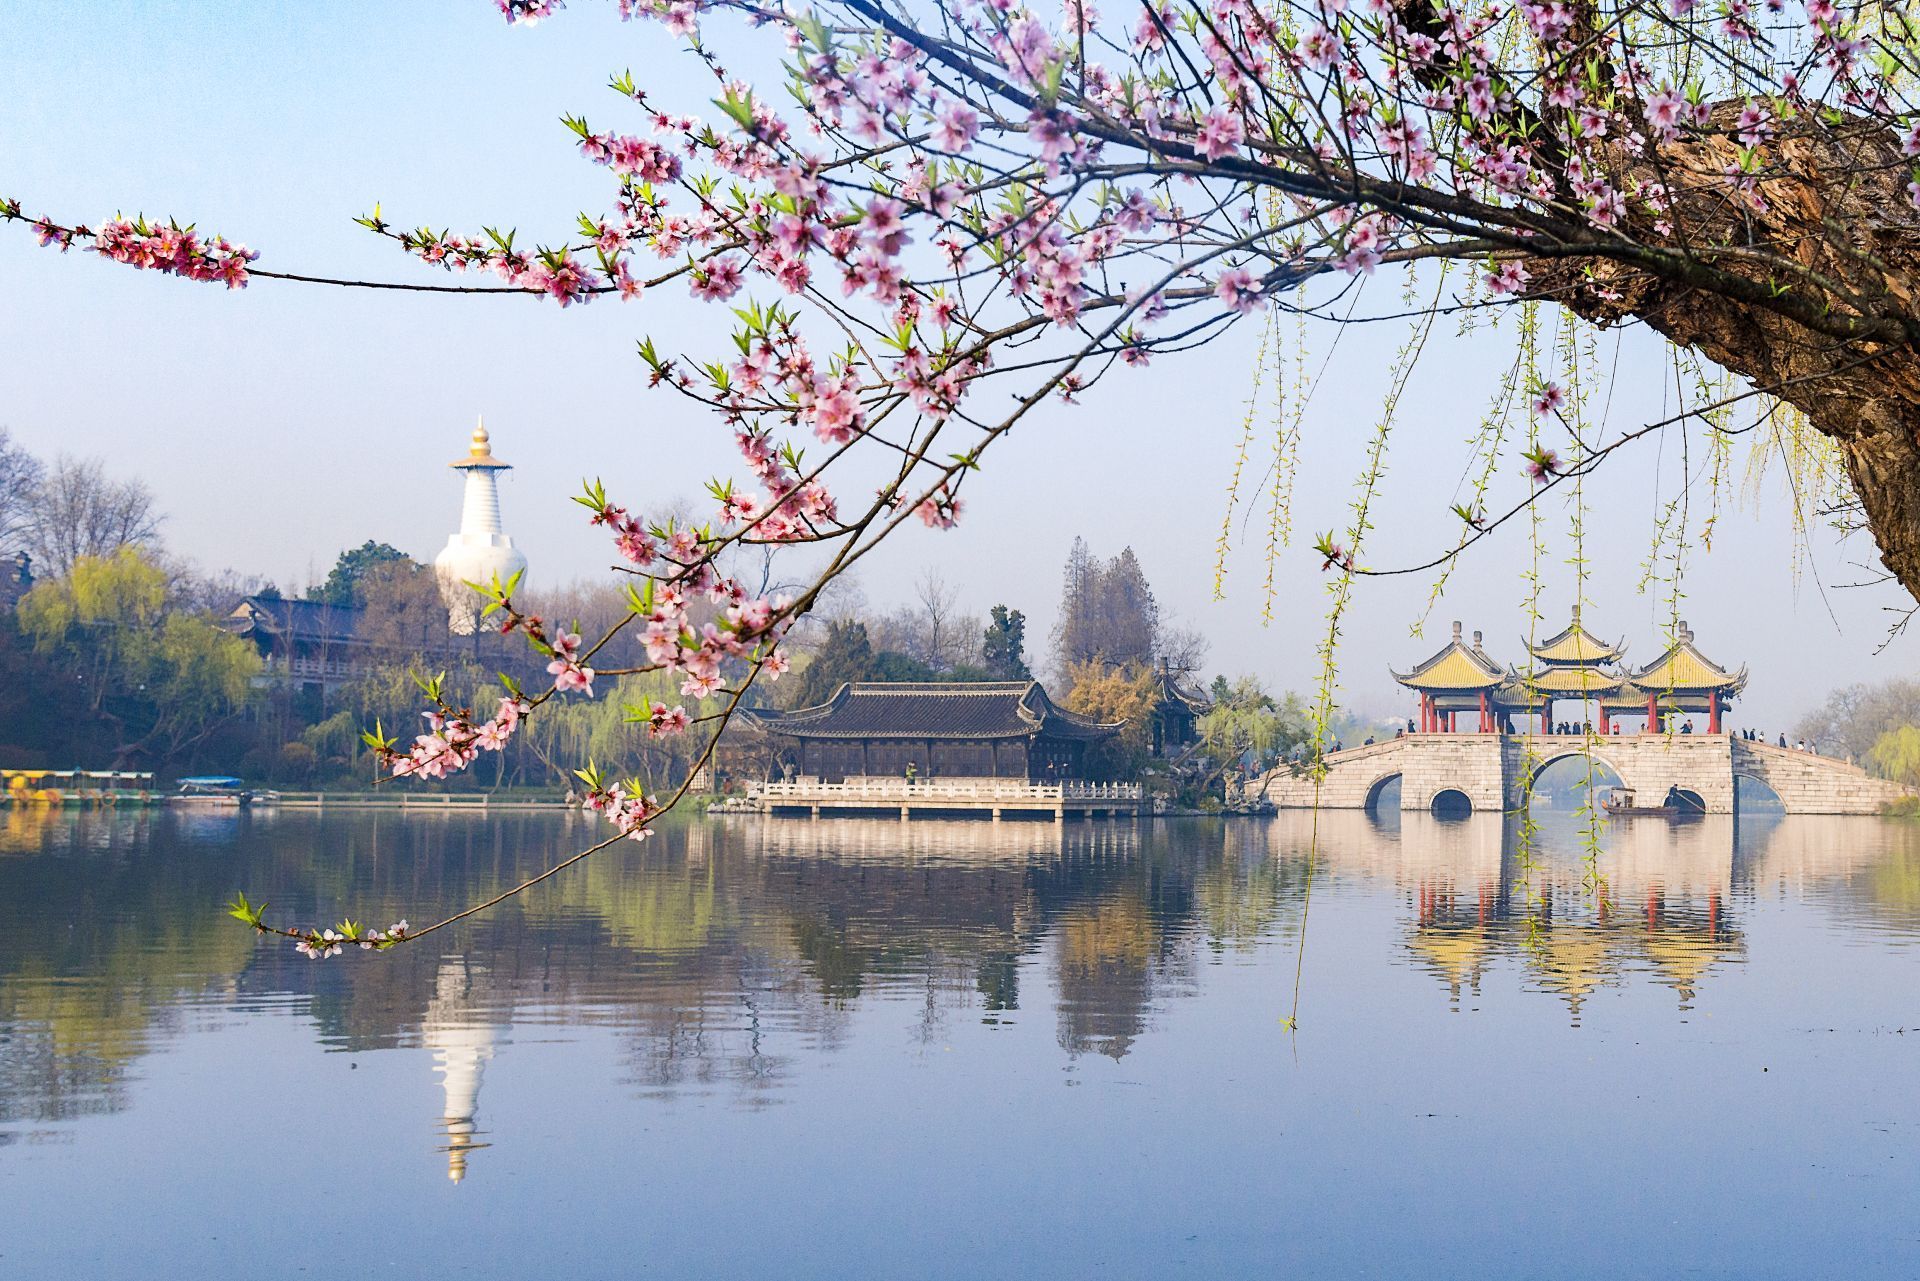 扬州蜀冈瘦西湖风景名胜区十年工笔画绘就大美新瘦西湖印象扛起大运河